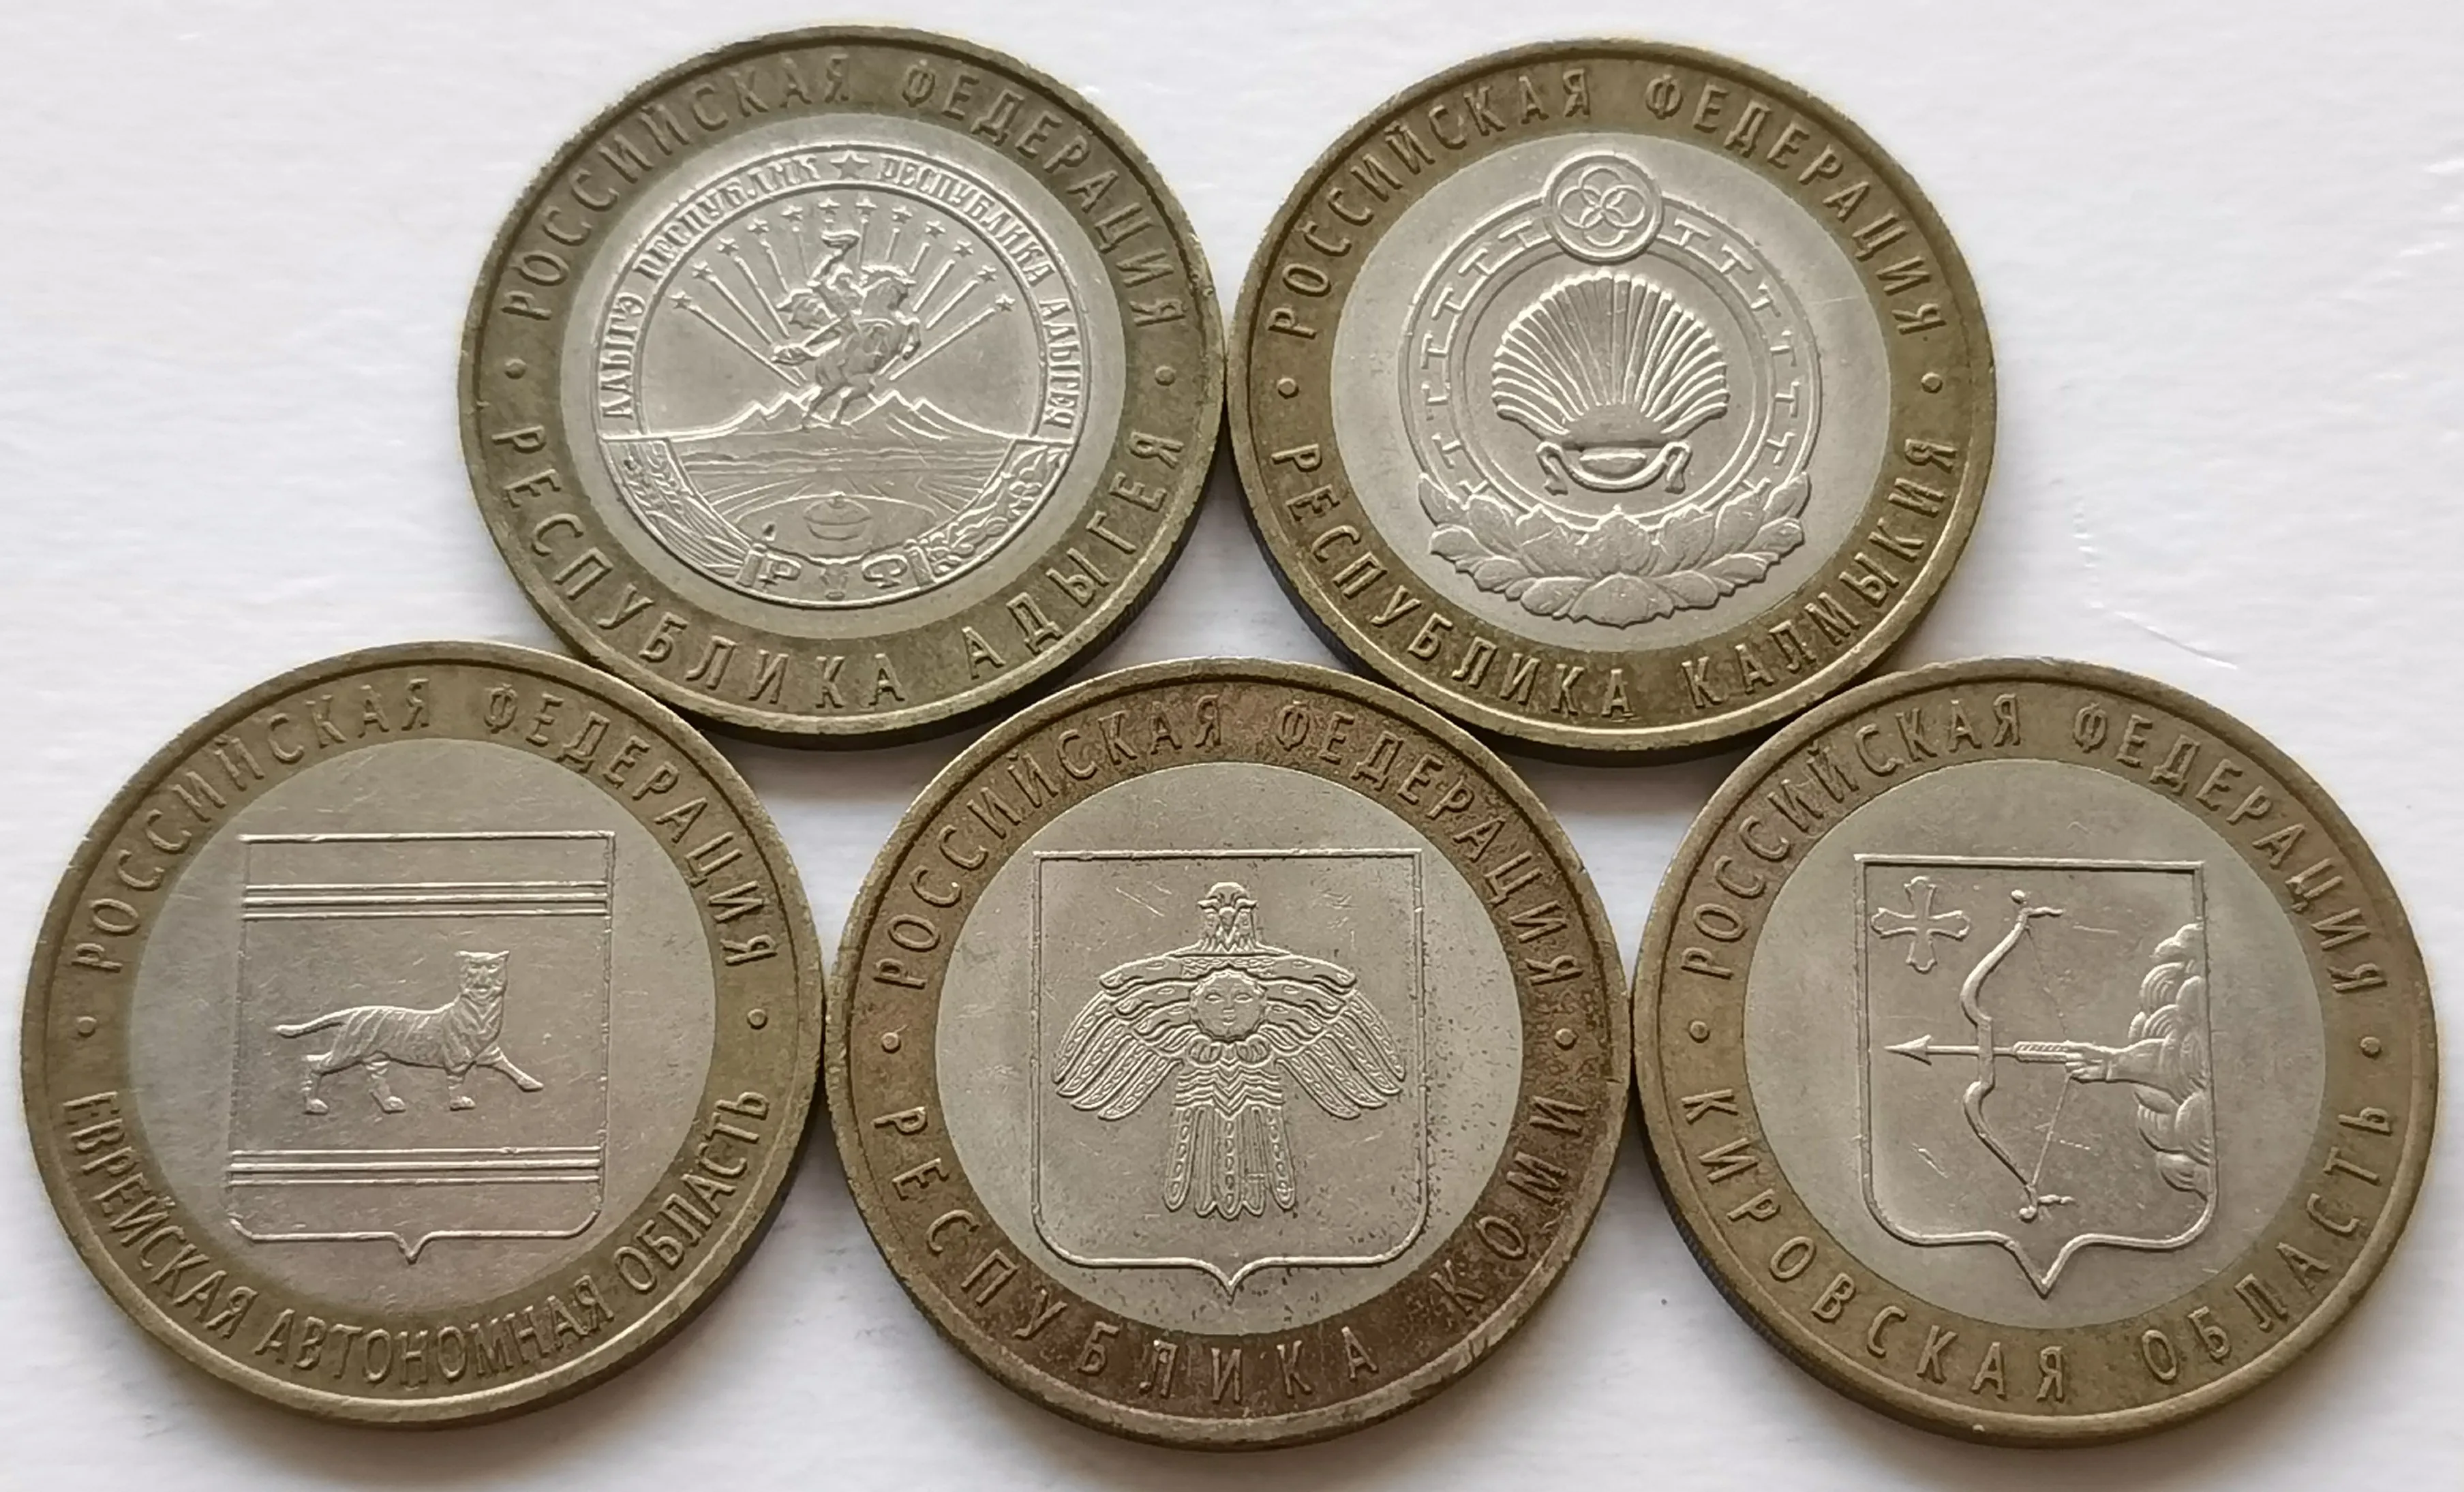 

2009 полный набор государственных монет, Россия, 10 рублей, памятные монеты, биметаллические монеты 27 мм